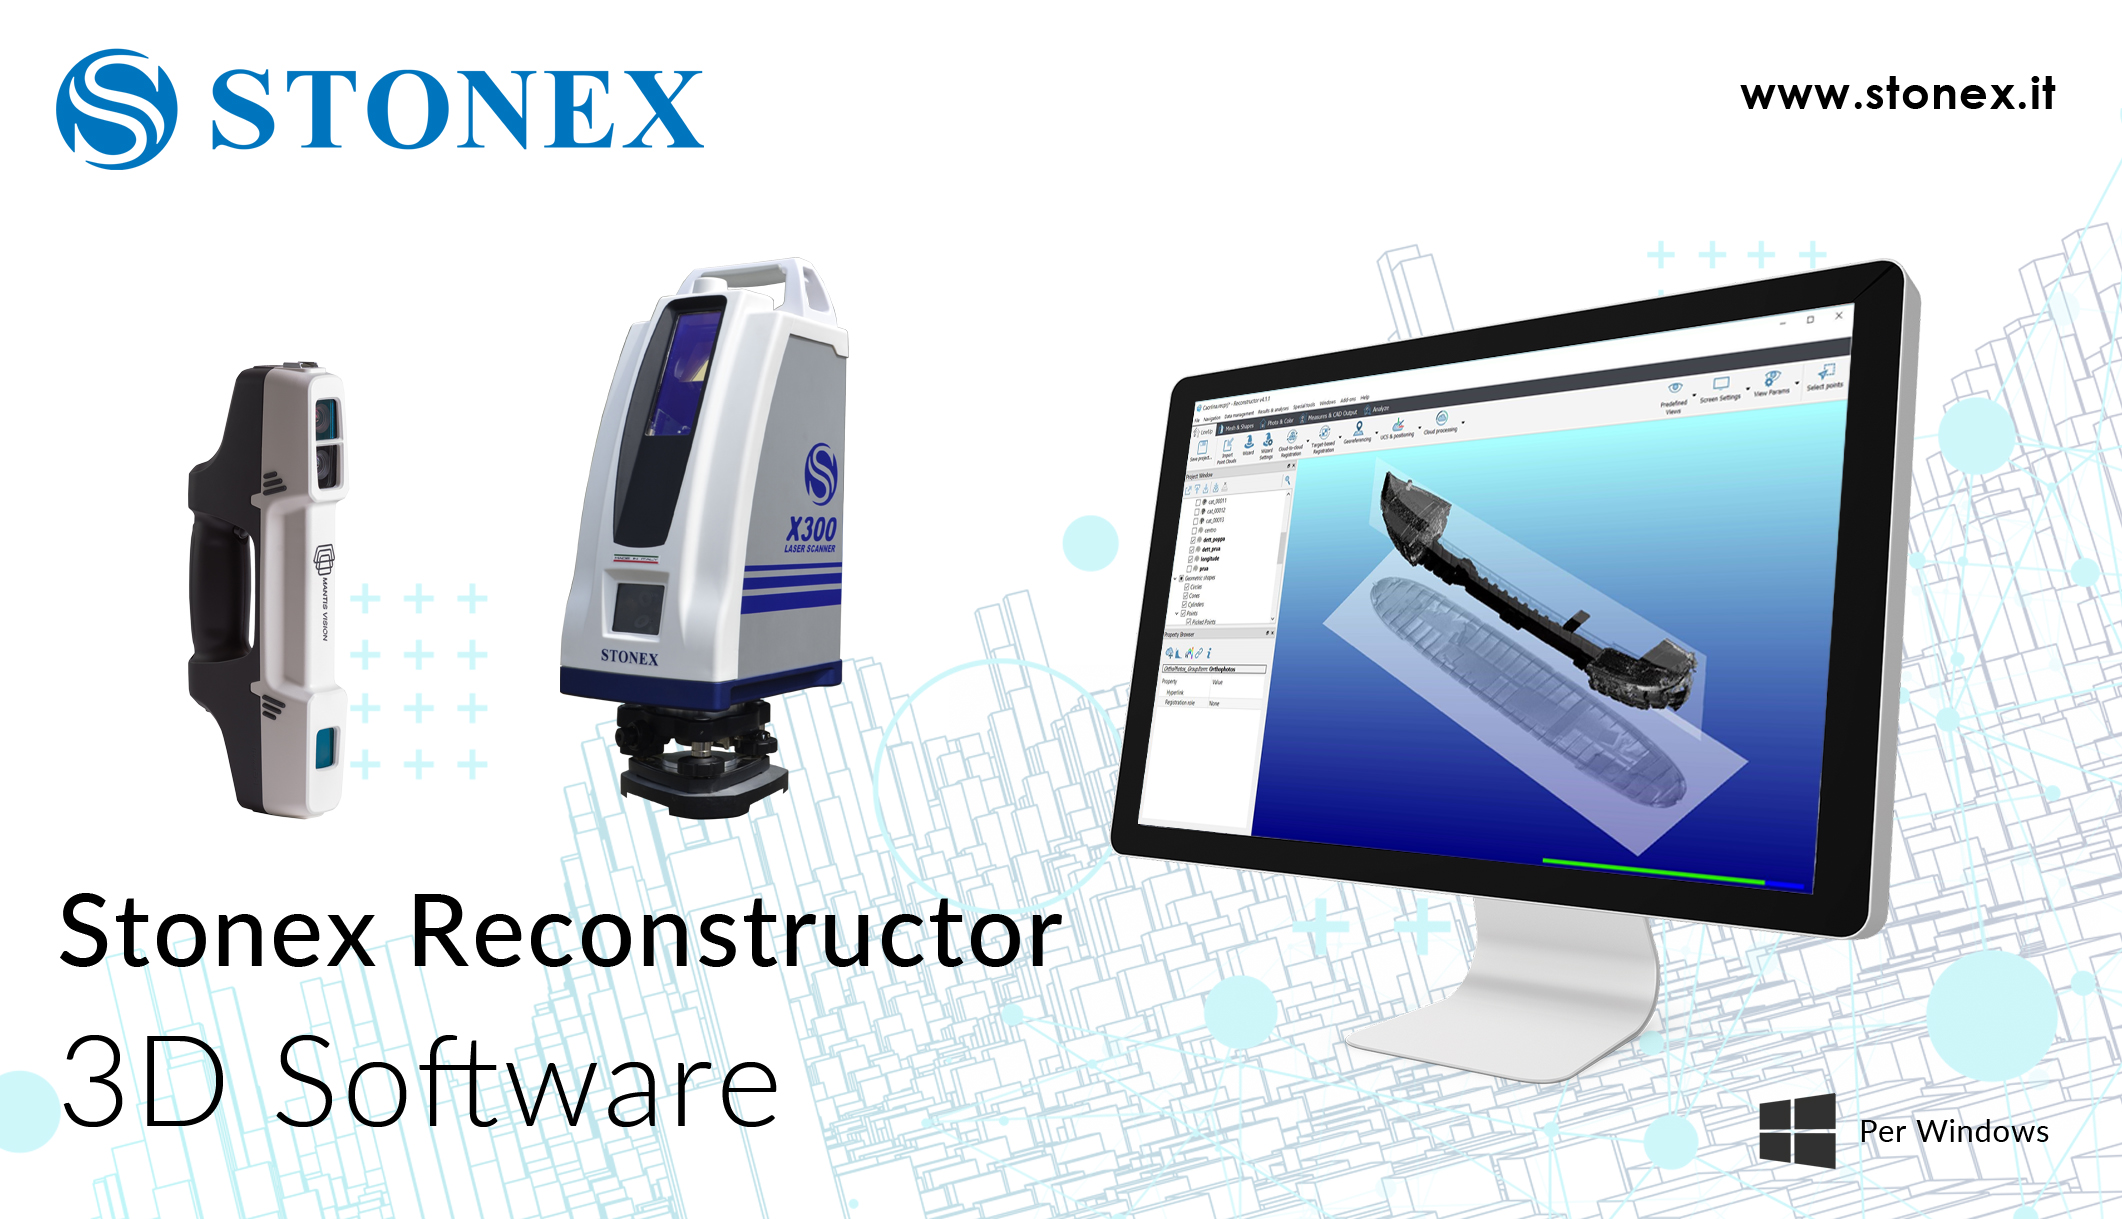 Stonex Reconstructor – Software 3D